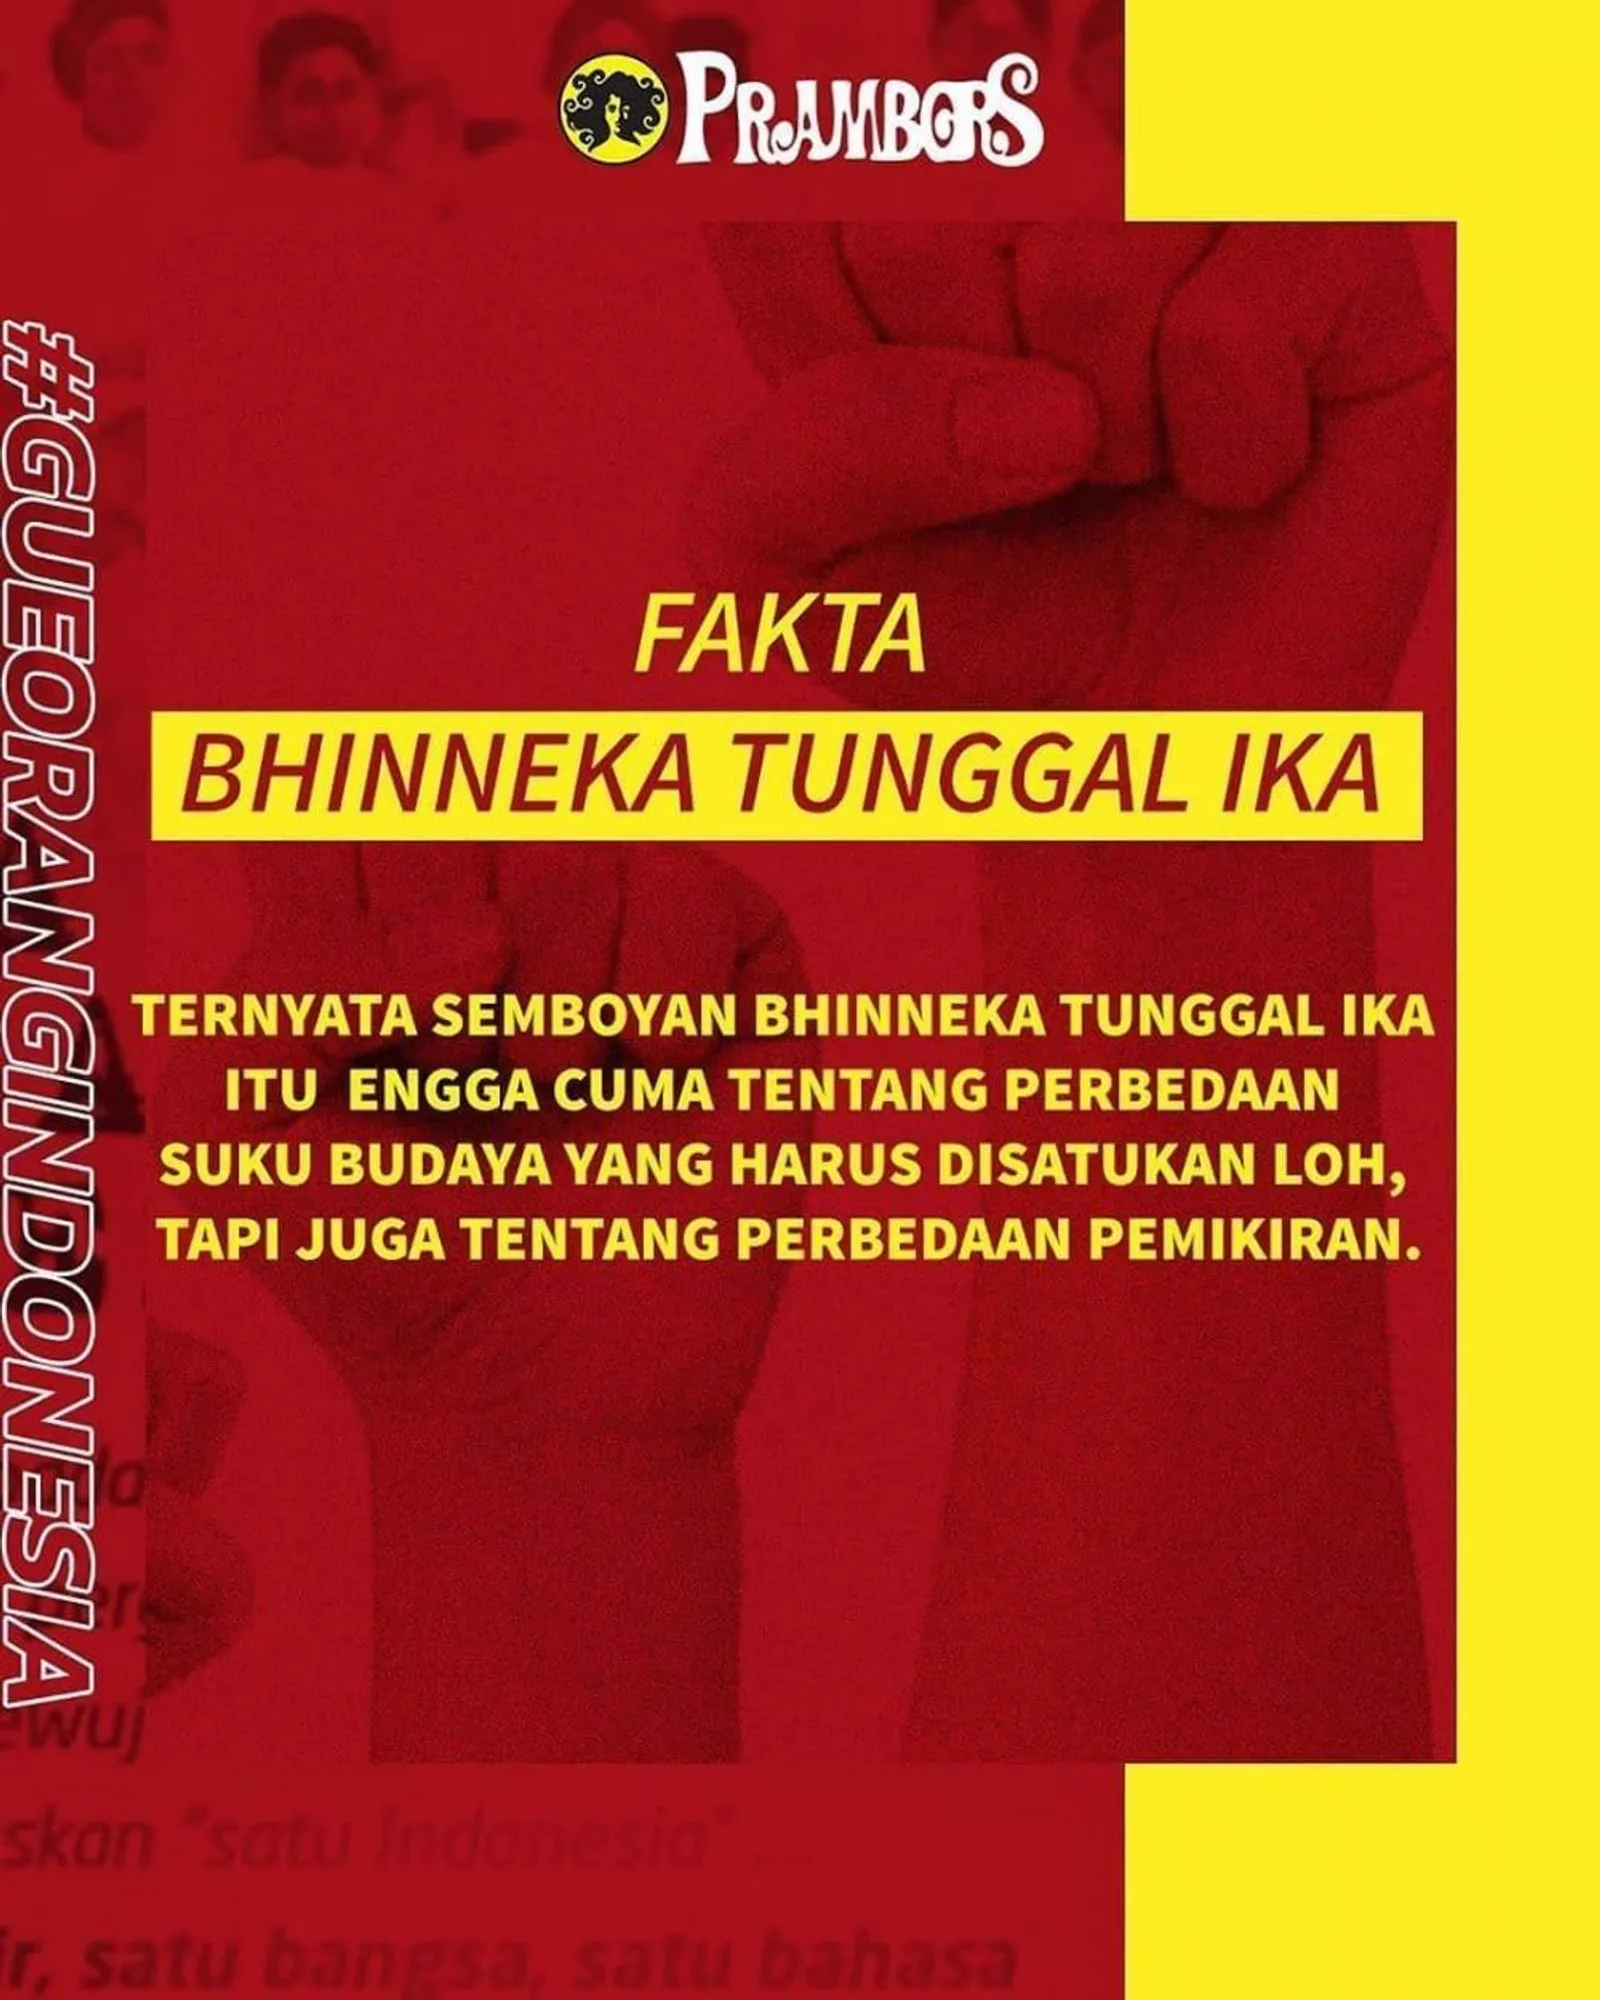 Maknai Sumpah Pemuda Lewat Kampanye #GueOrangIndonesia